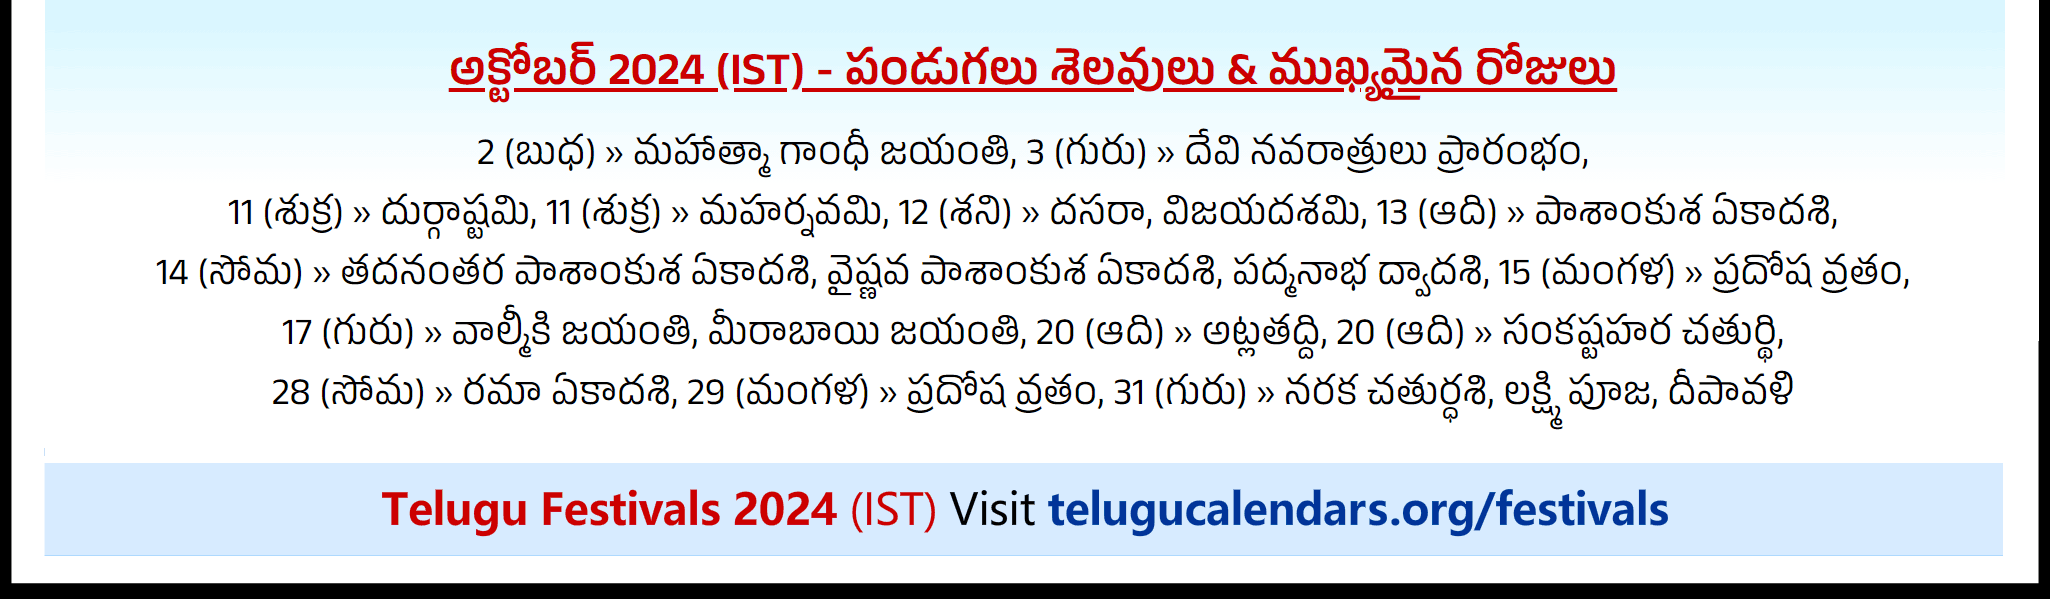 Telugu Festivals 2024 October Auckland